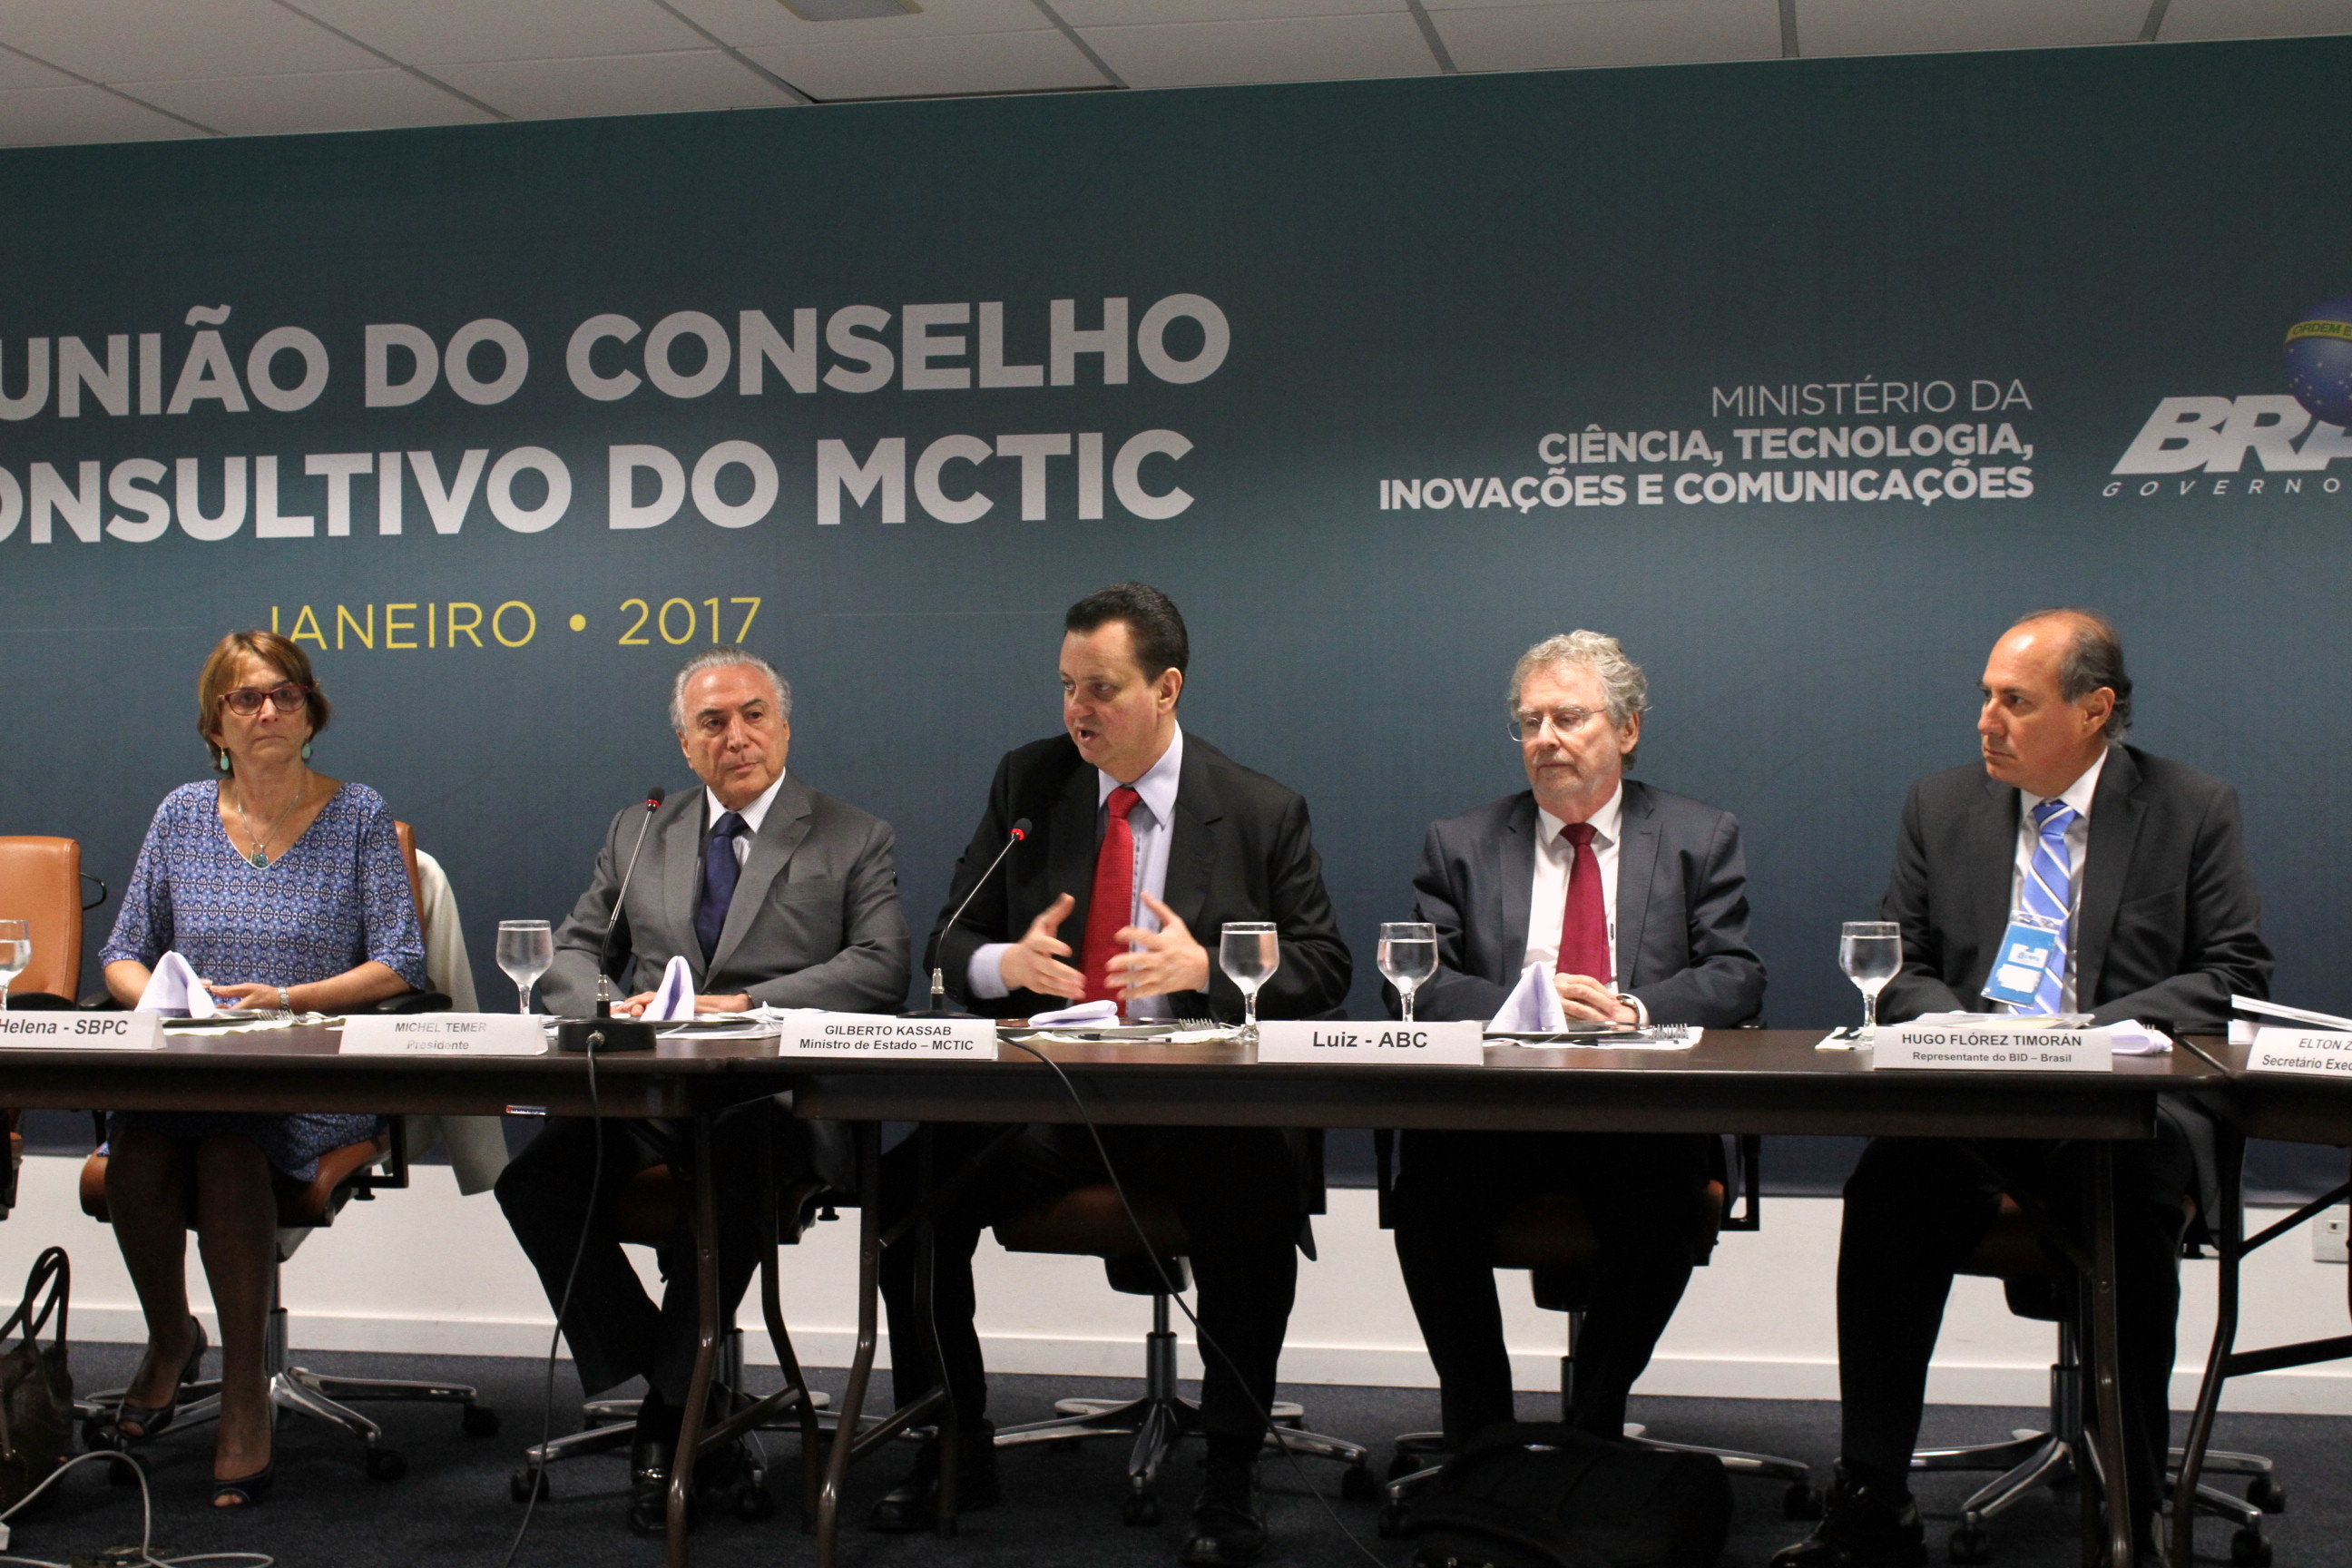  Reunião do Conselho Consultivo do MCTIC 2017 -Foto Marcelo Gondim